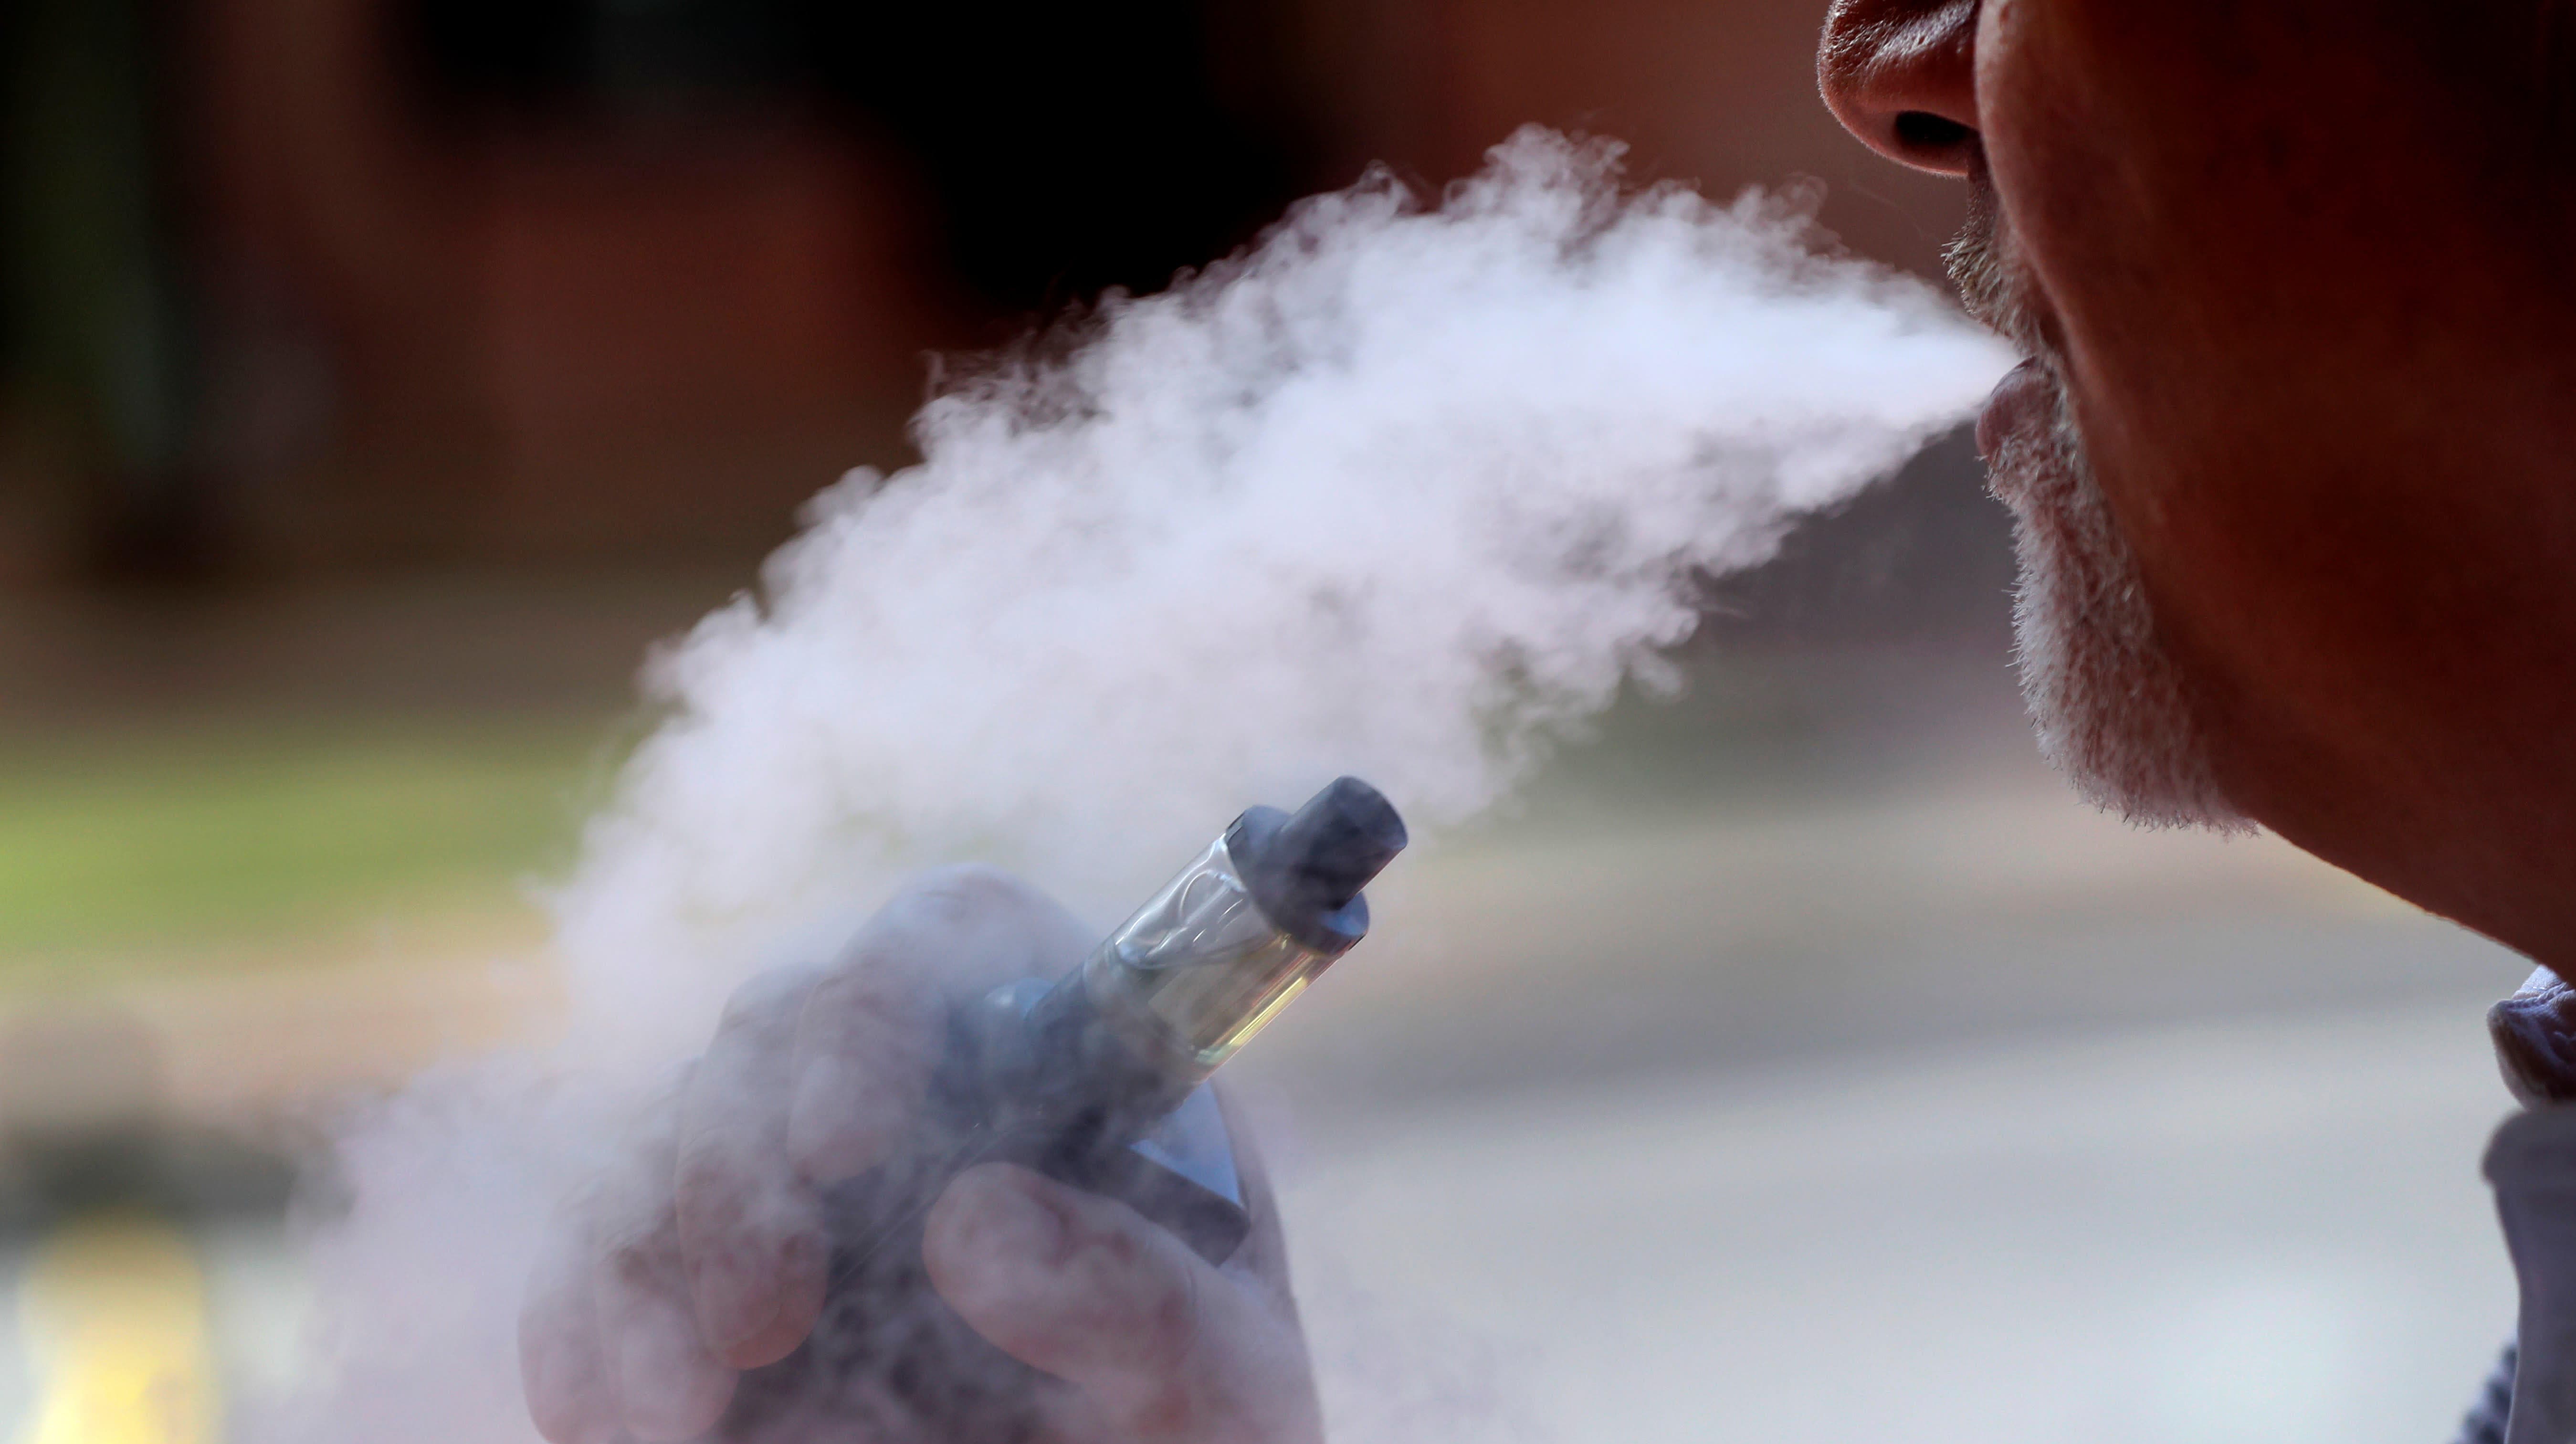 Homem expelindo fumaça após usar cigarro eletrônico/vaporizador